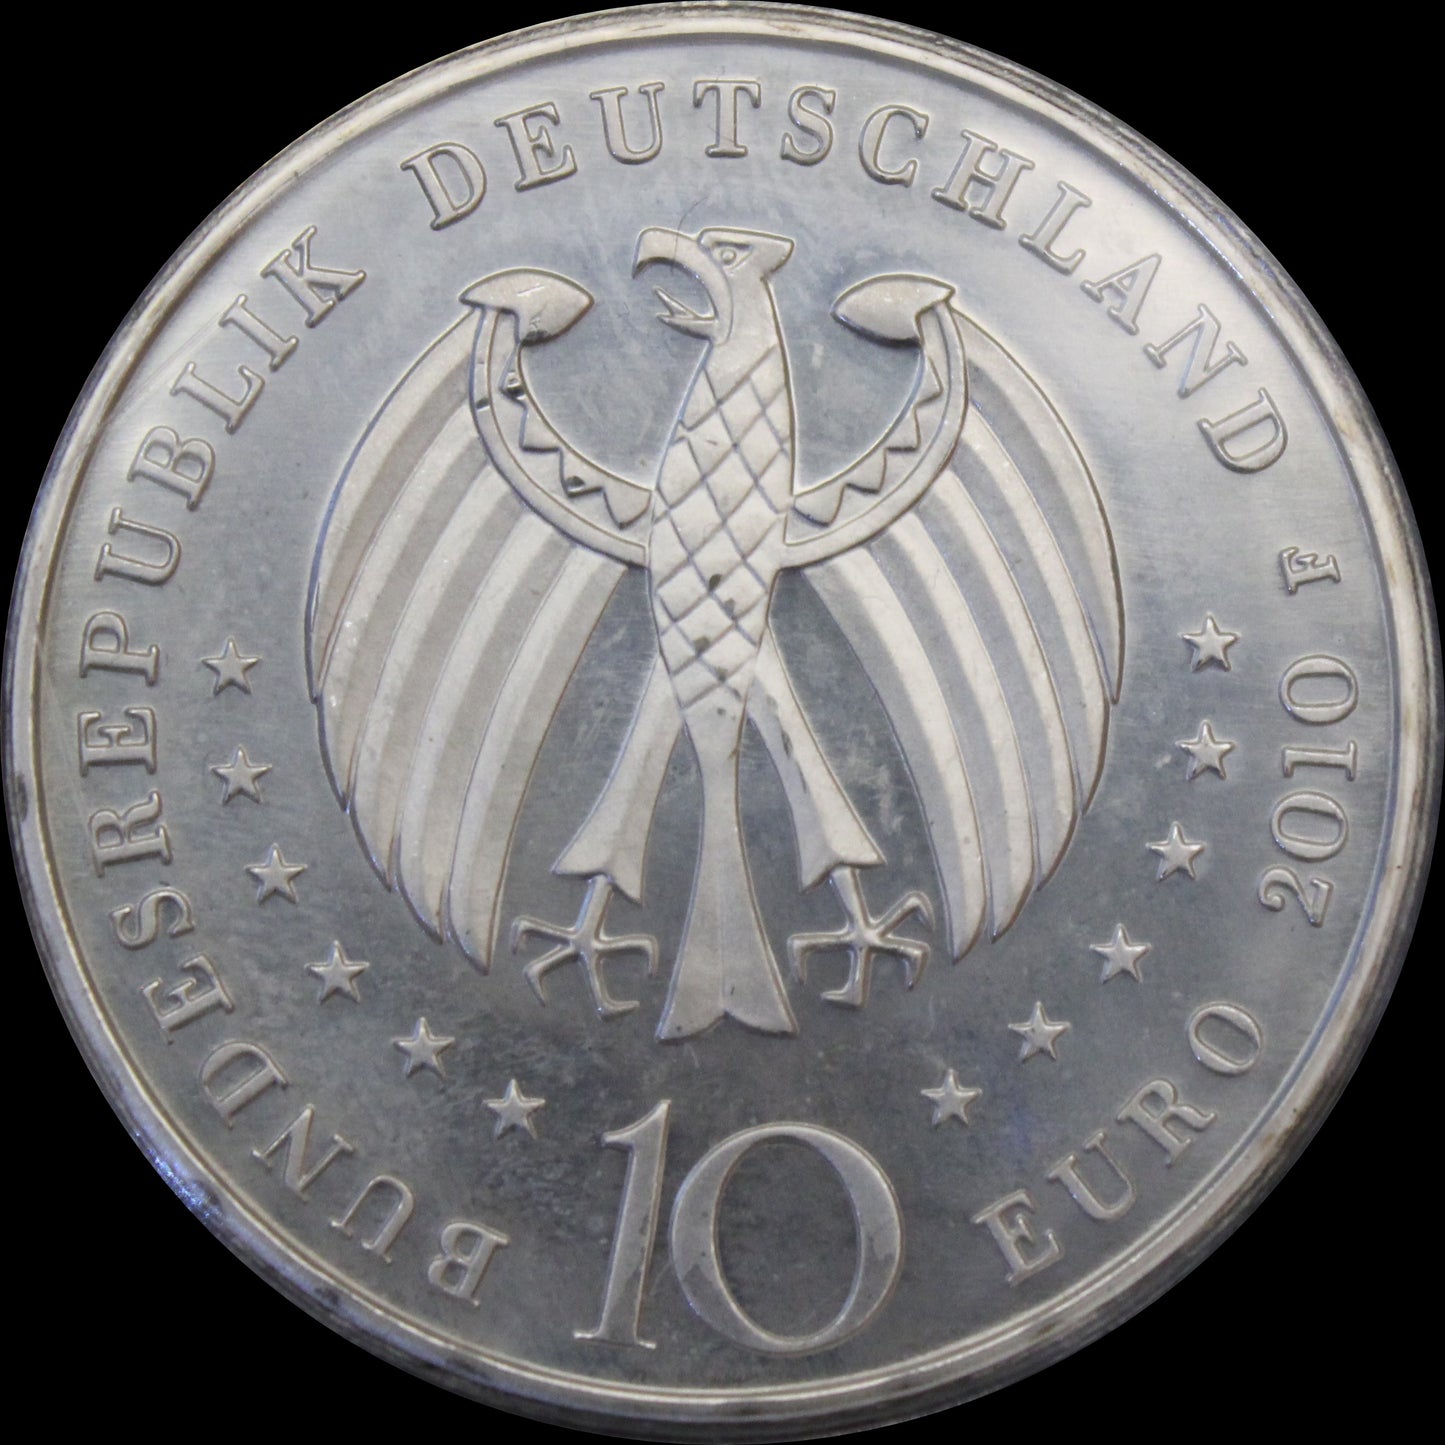 300 JAHRE PORZELANHERSTELLUNG IN DEUTSCHLAND, Serie 10 € Silber Gedenkmünzen Deutschland, Stempelglanz, 2010